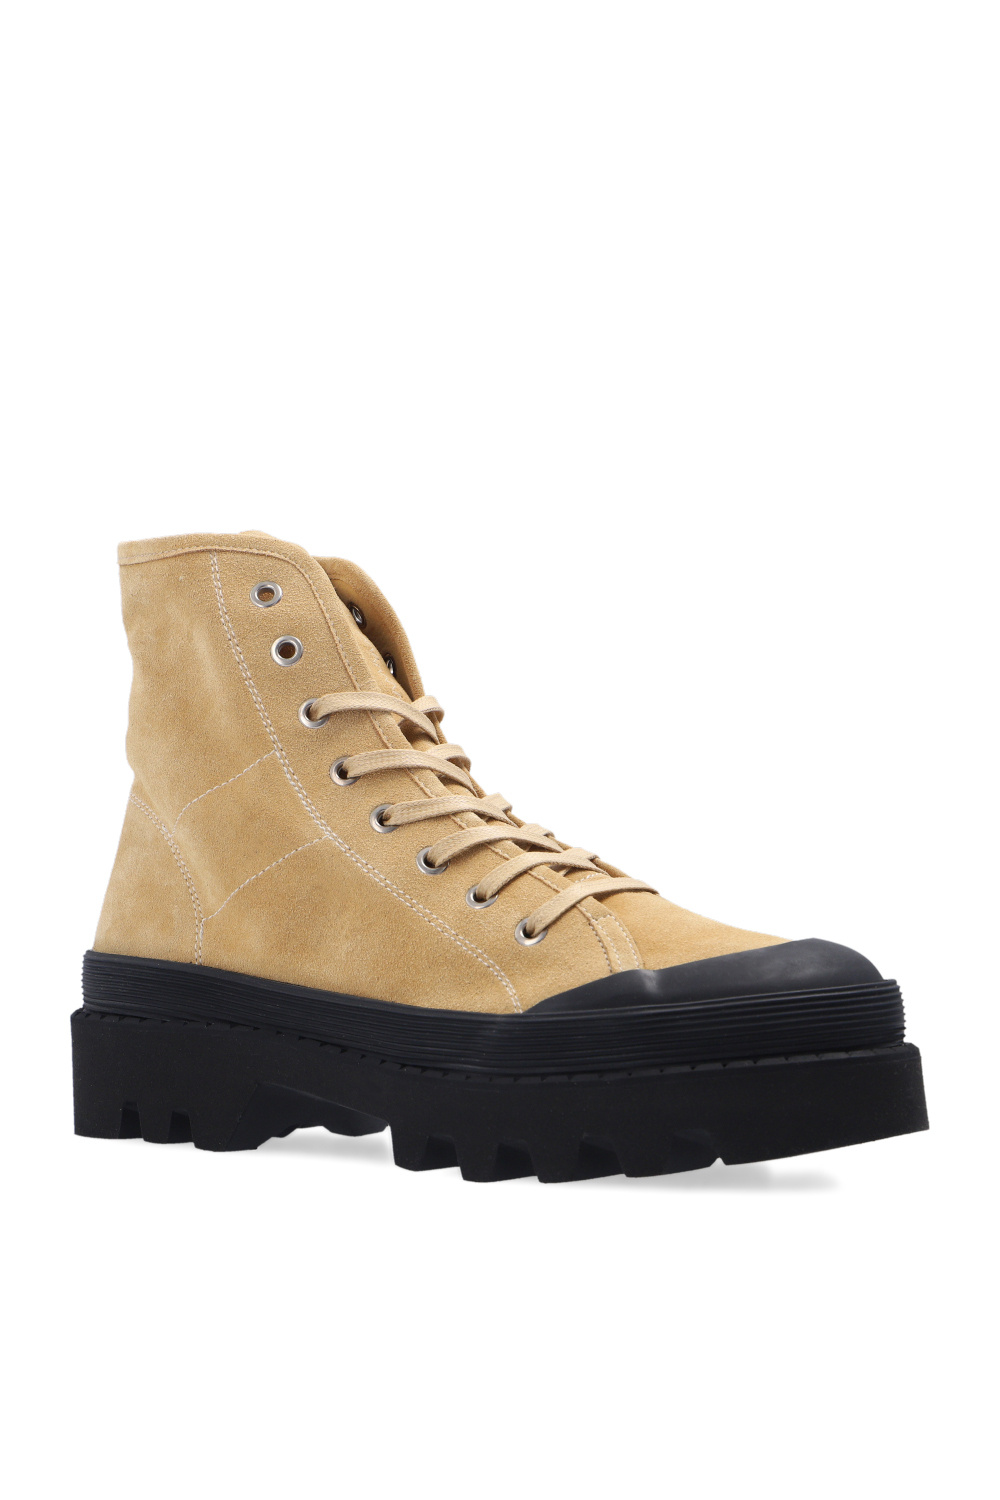 Proenza Schouler ‘Combat’ boots